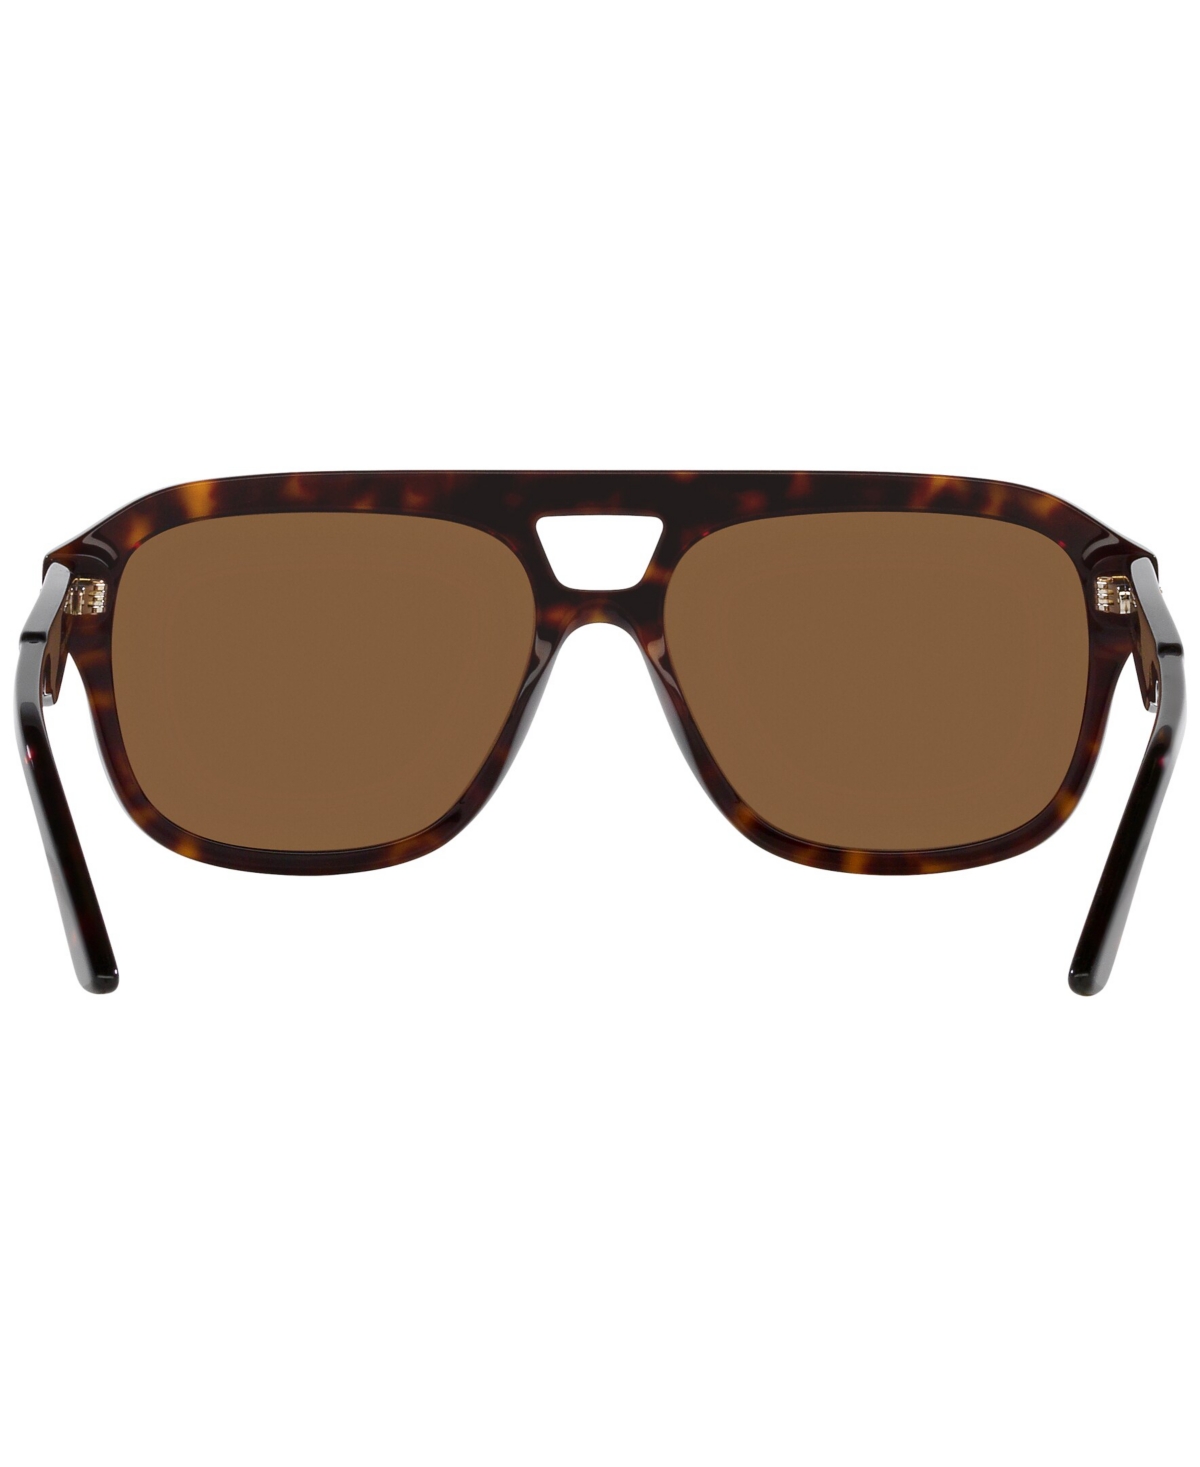 Shop Gucci Men's Sunglasses, Gg1263s In Tortoise